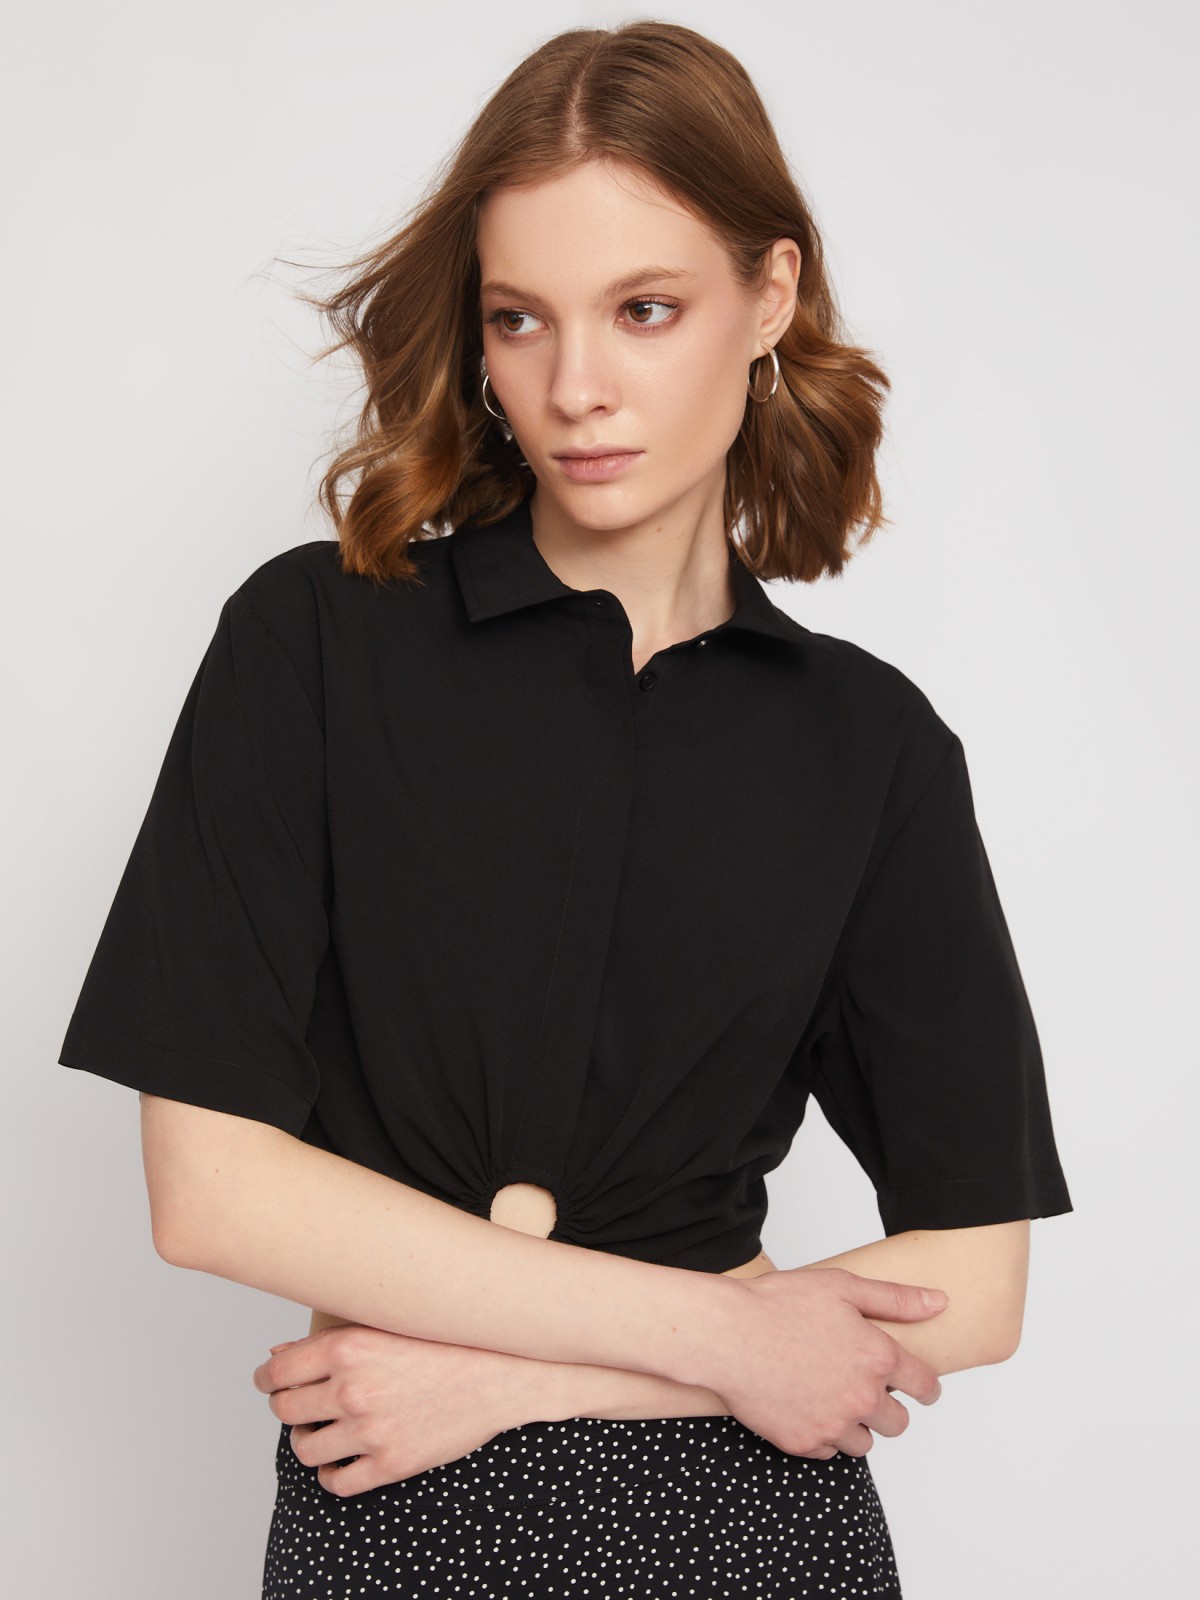 Укороченная блузка-рубашка с драпировкой zolla 02423127Y081, цвет черный, размер S - фото 3